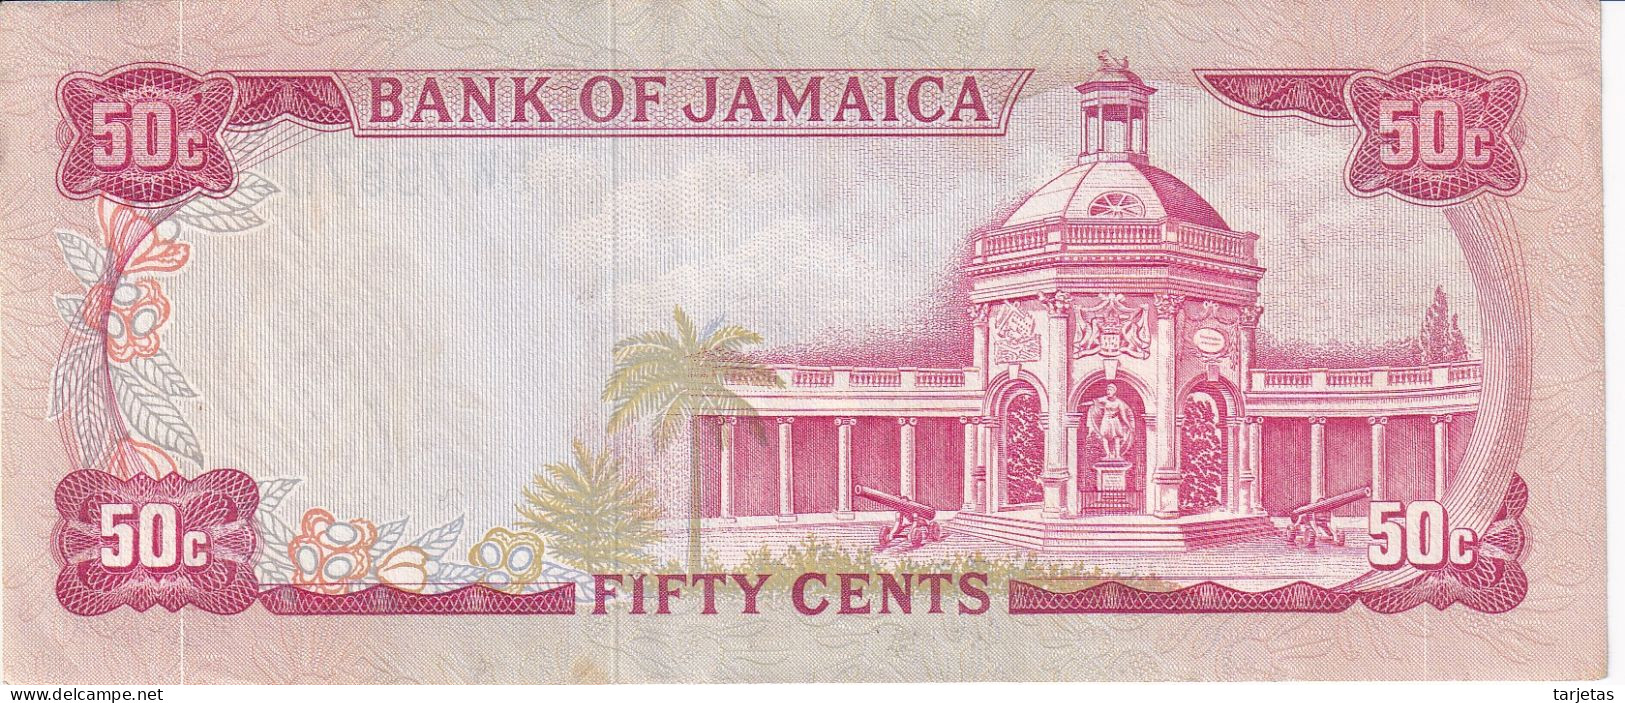 BILLETE DE JAMAICA DE 50 CENTS DEL AÑO 1970 EN CALIDAD EBC (XF)  (BANKNOTE) - Jamaica